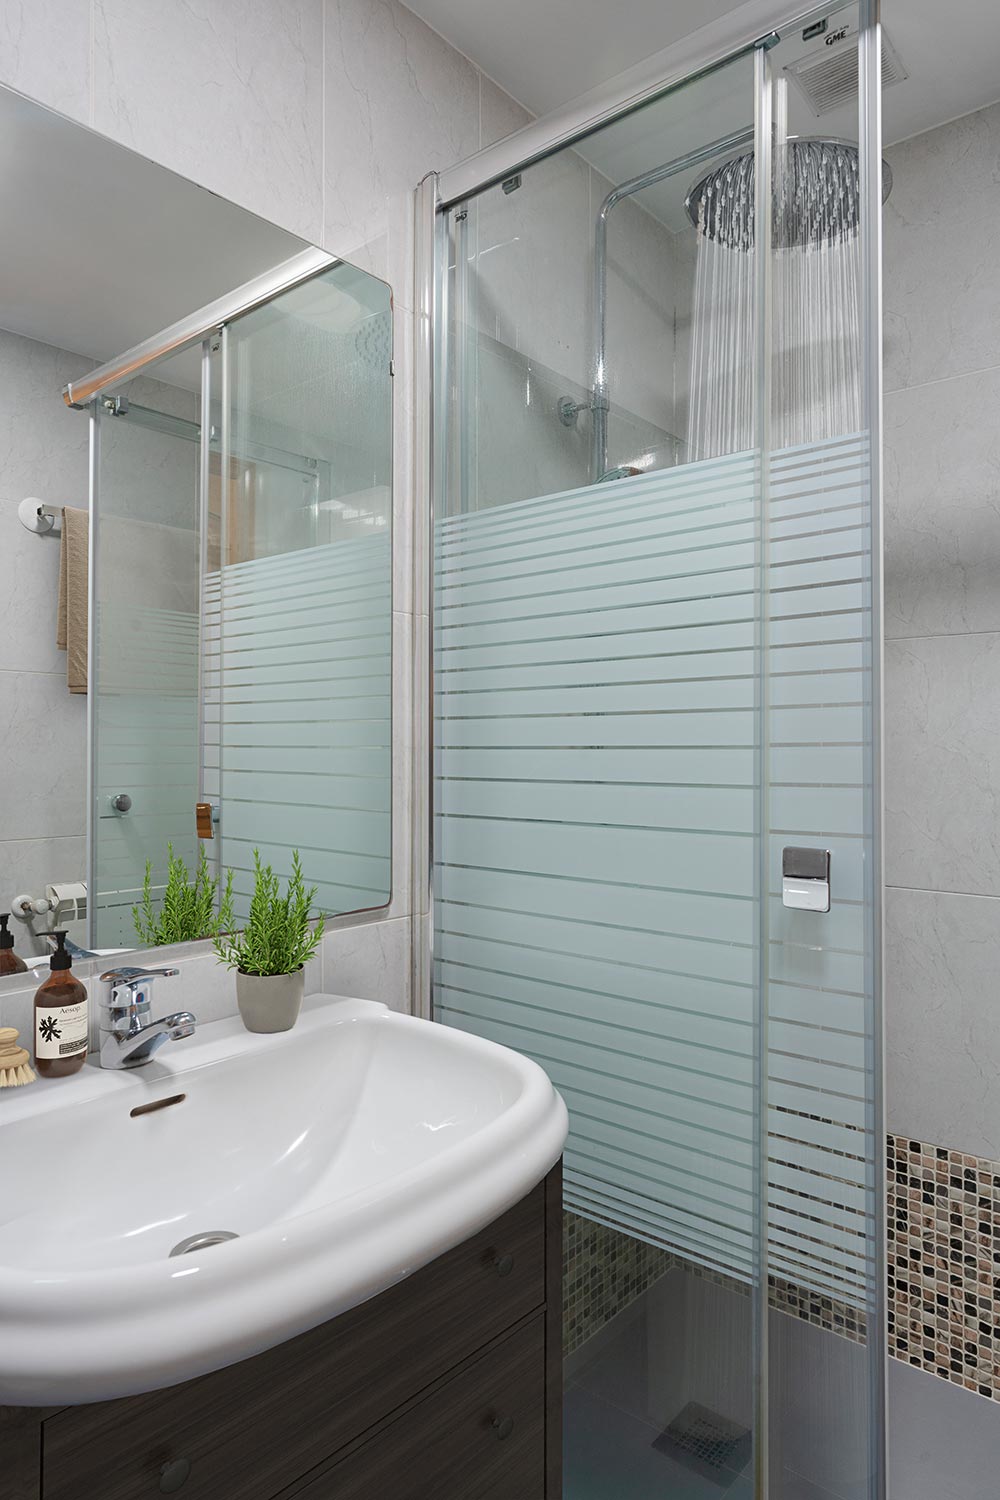 Baño contemporáneo con lavabo sobre mueble de madera oscura, accesorios de baño, una planta pequeña y una cabina de ducha con puertas de vidrio y azulejos claros.